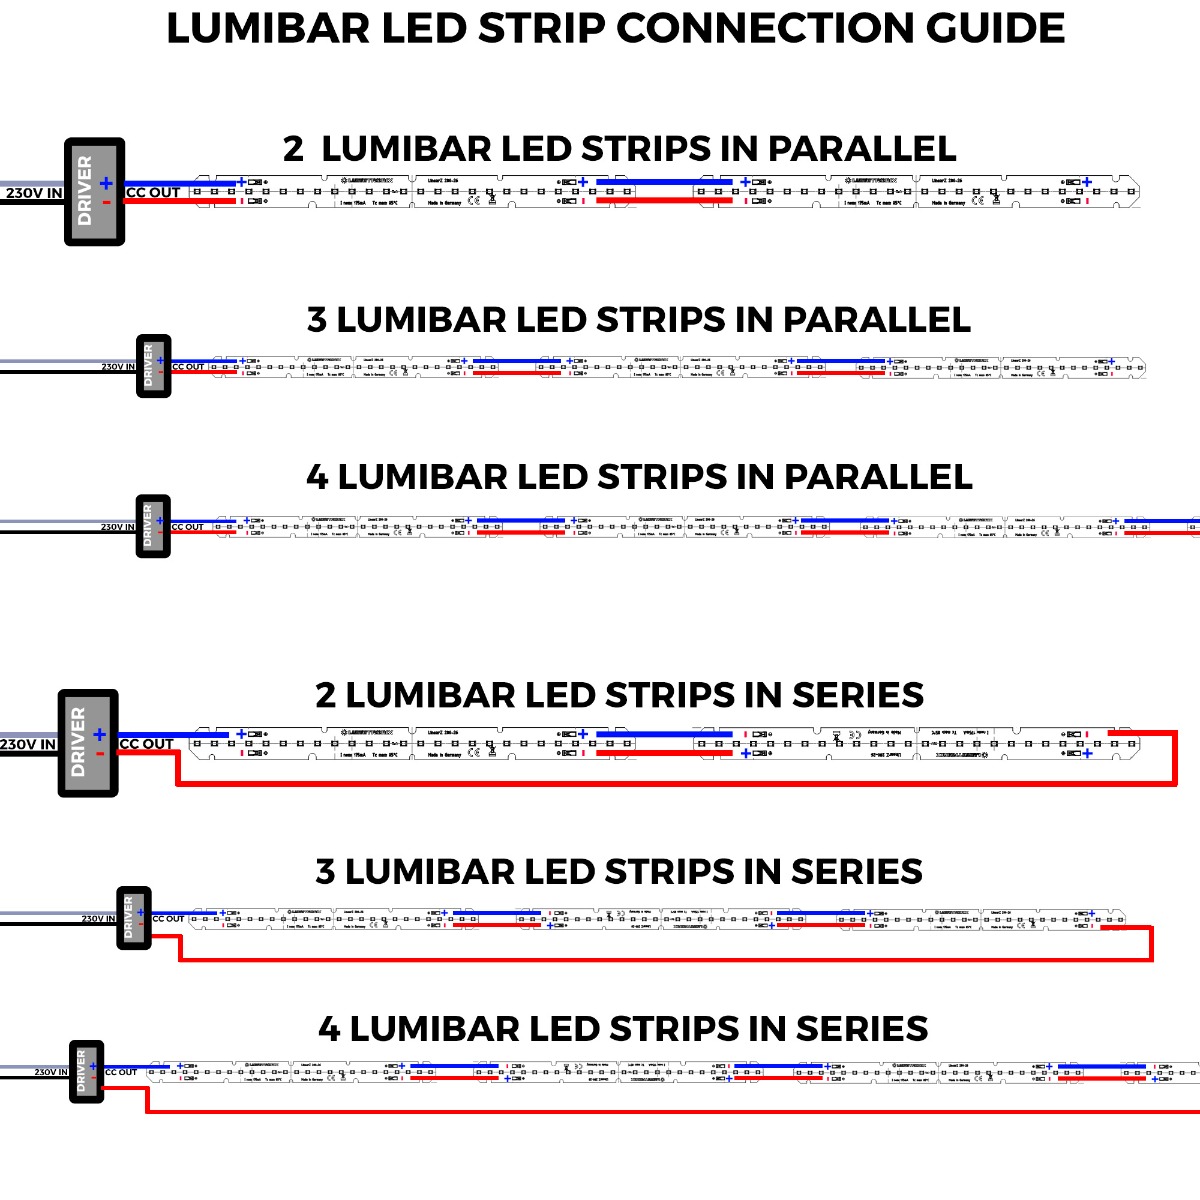 Lumibar-14-4080 Samsung LED Strip LED alb cald CRI80 3000K 398lm 125mA 15V 12 LED-uri 14cm modul (2843lm/m 14W/m)